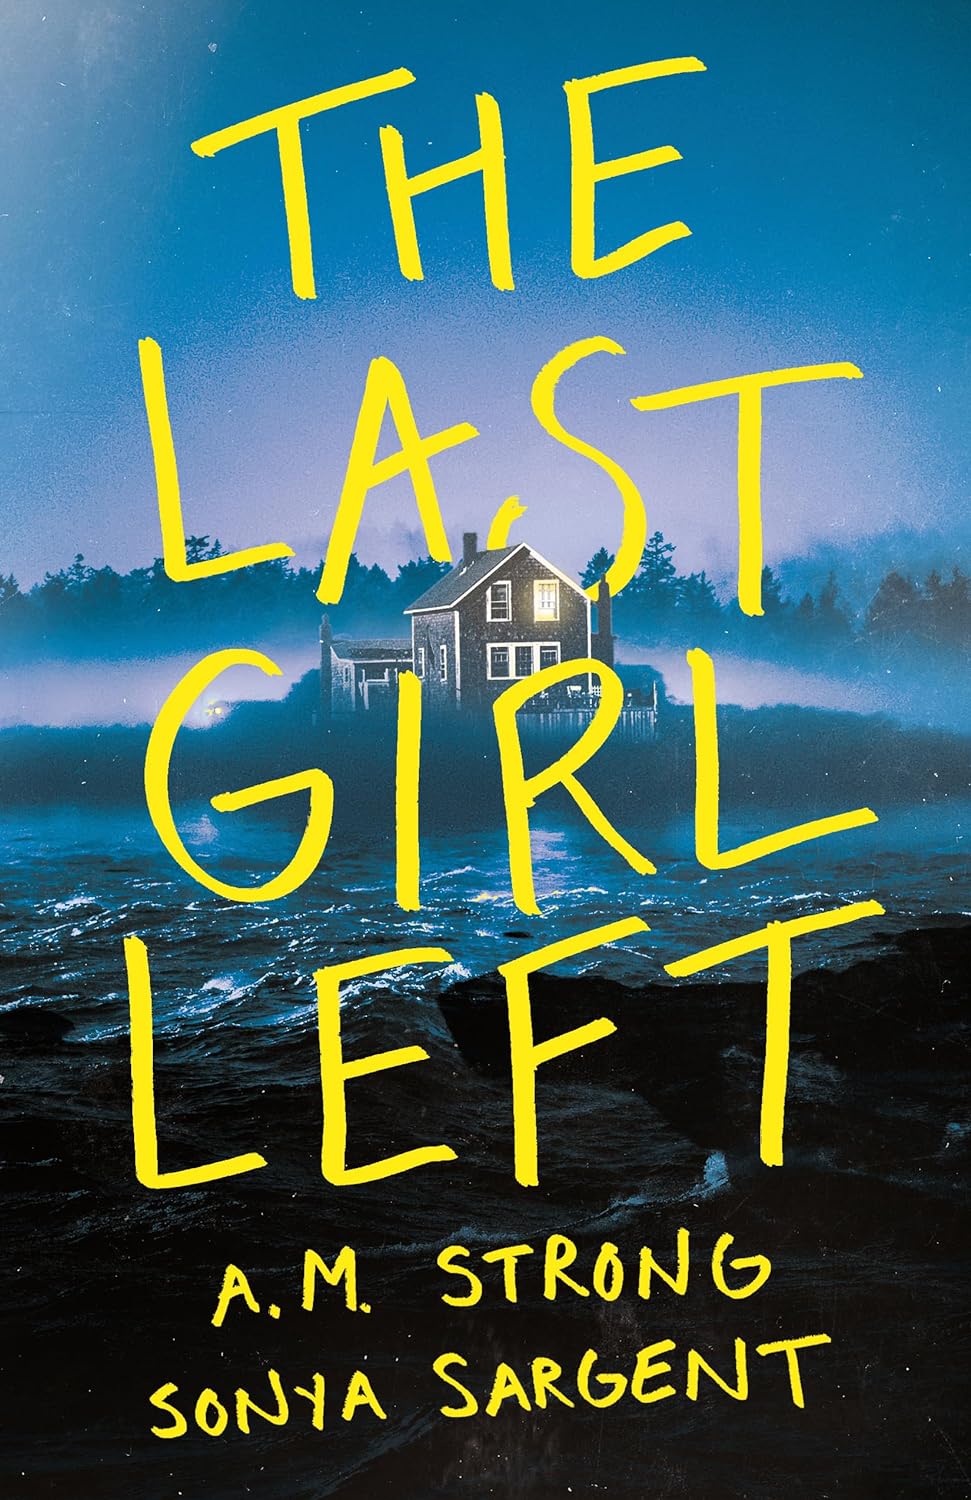 The Last Girl Left